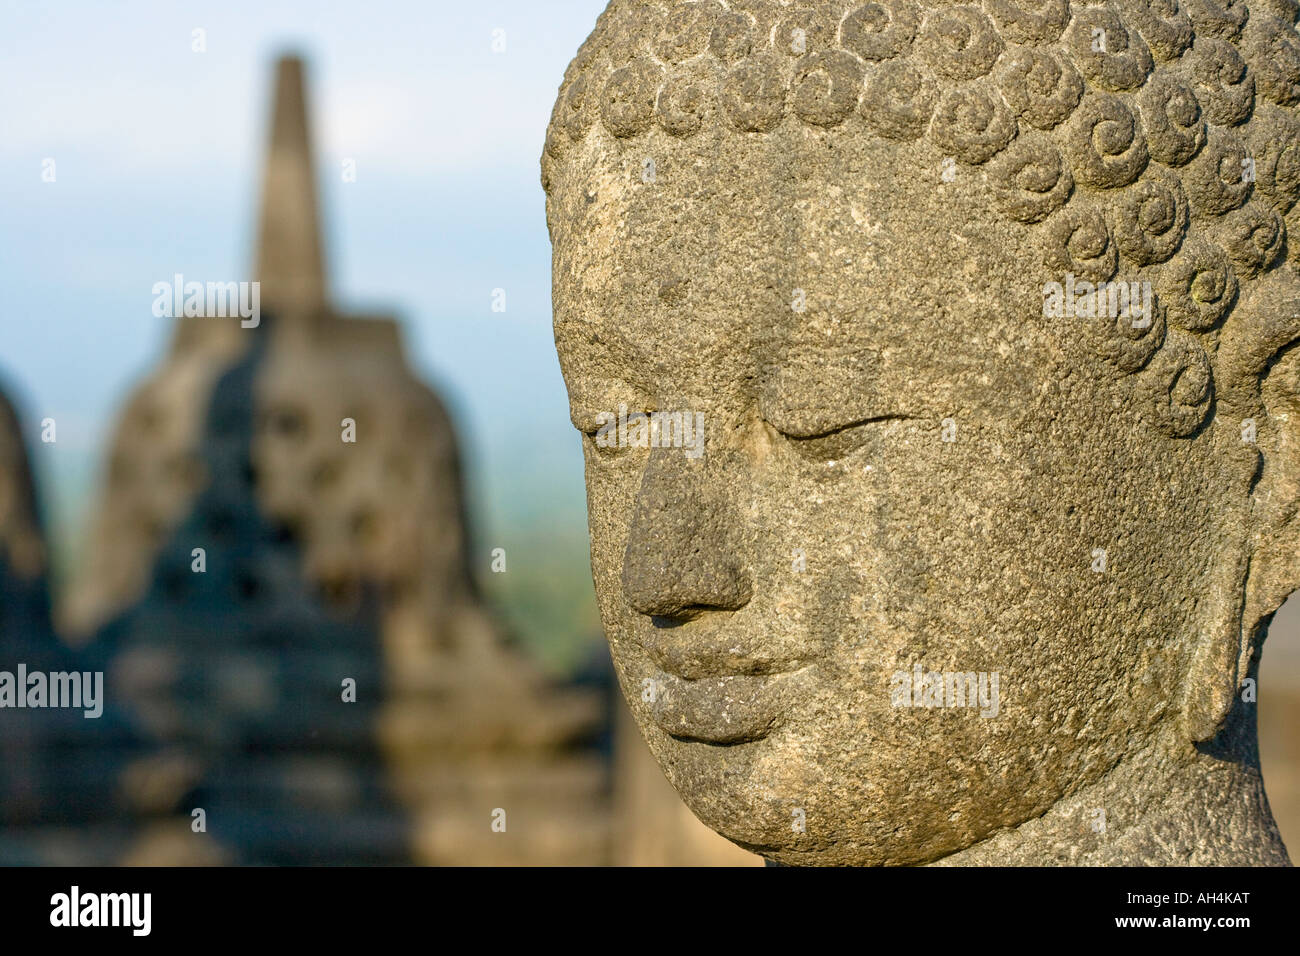 Statue de Bouddha en pierre Borobudur Indonésie Banque D'Images